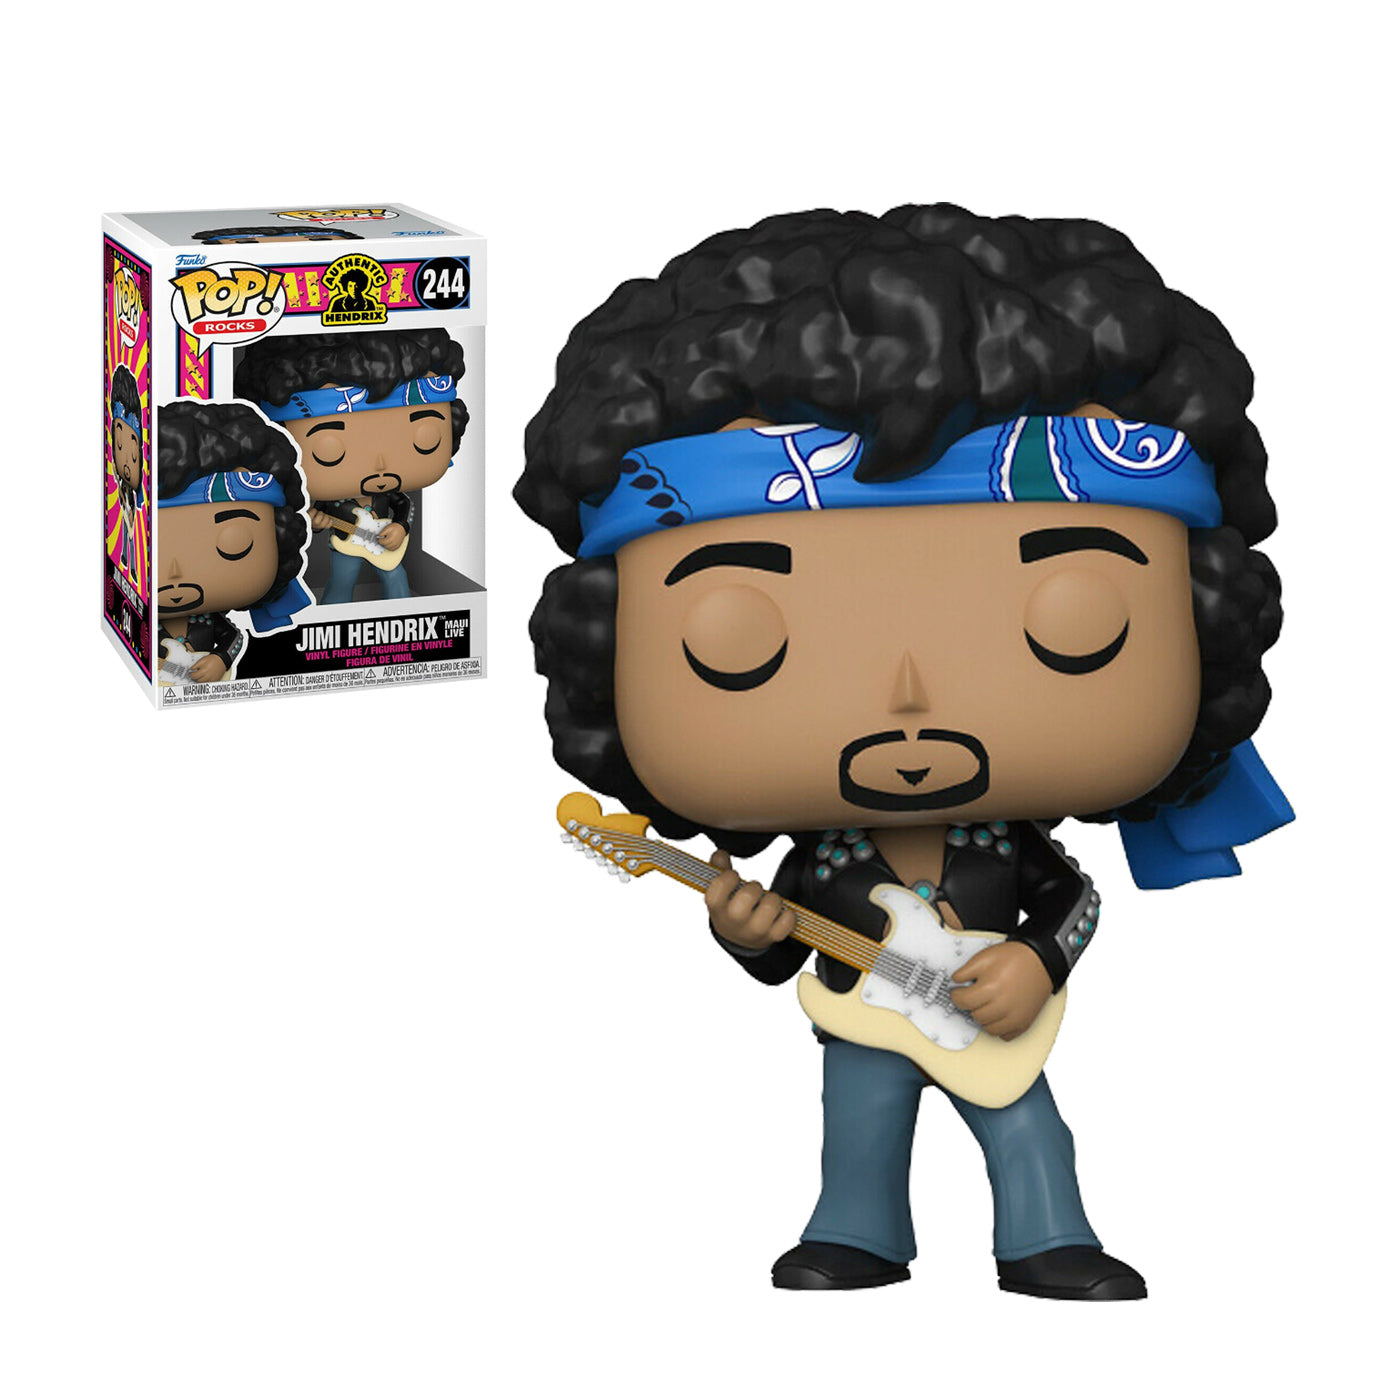 Funko Pop Rocks: Jimi Hendrix (244)